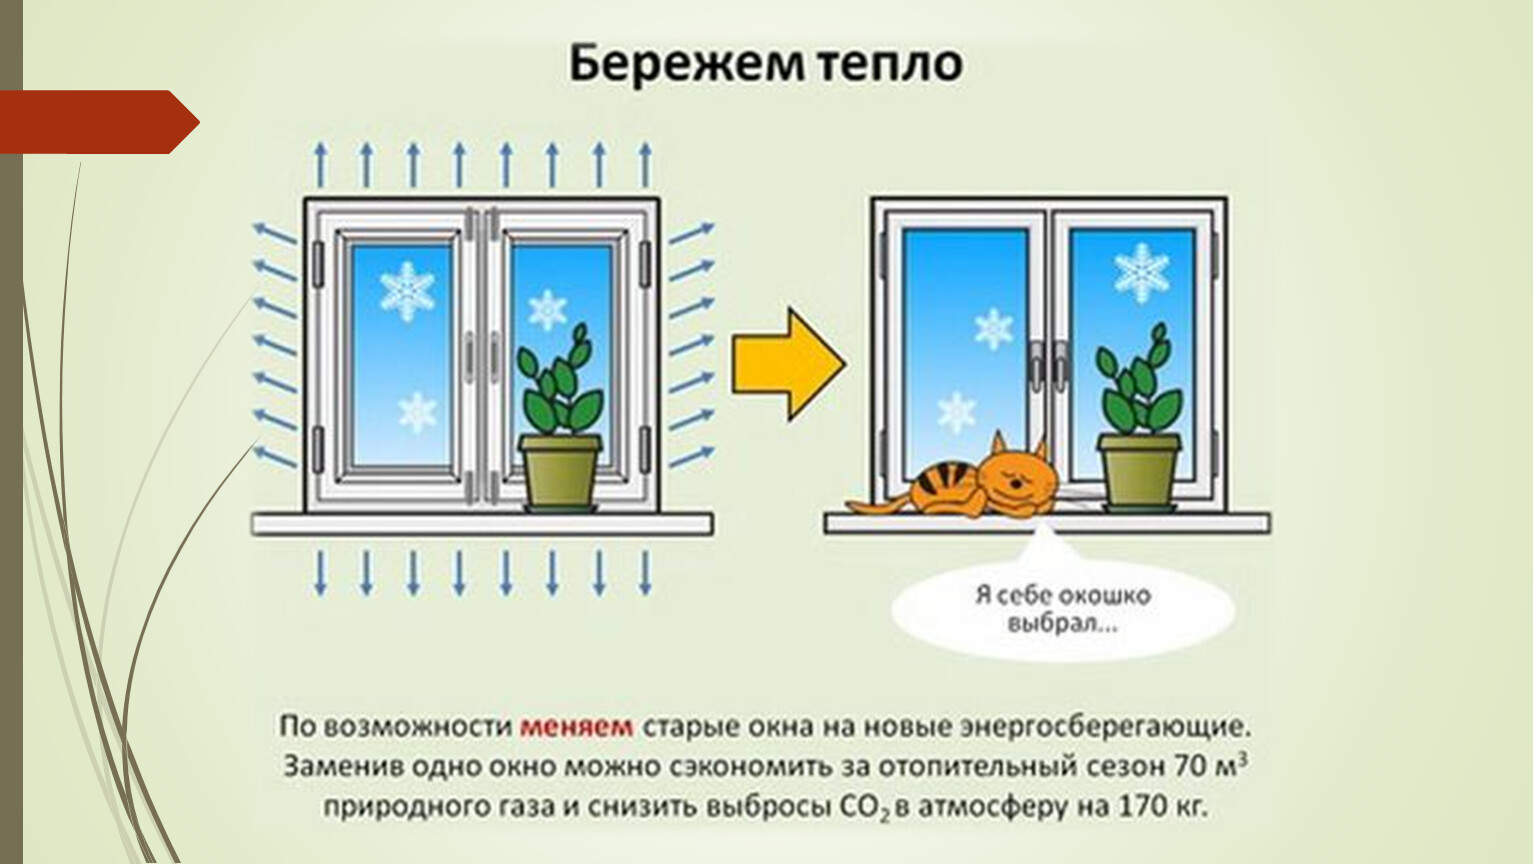 Берегите тепло 2. Экономия электроэнергии. Энергосбережение тепла. Энергоэффективные окна. Способы энергосбережения.